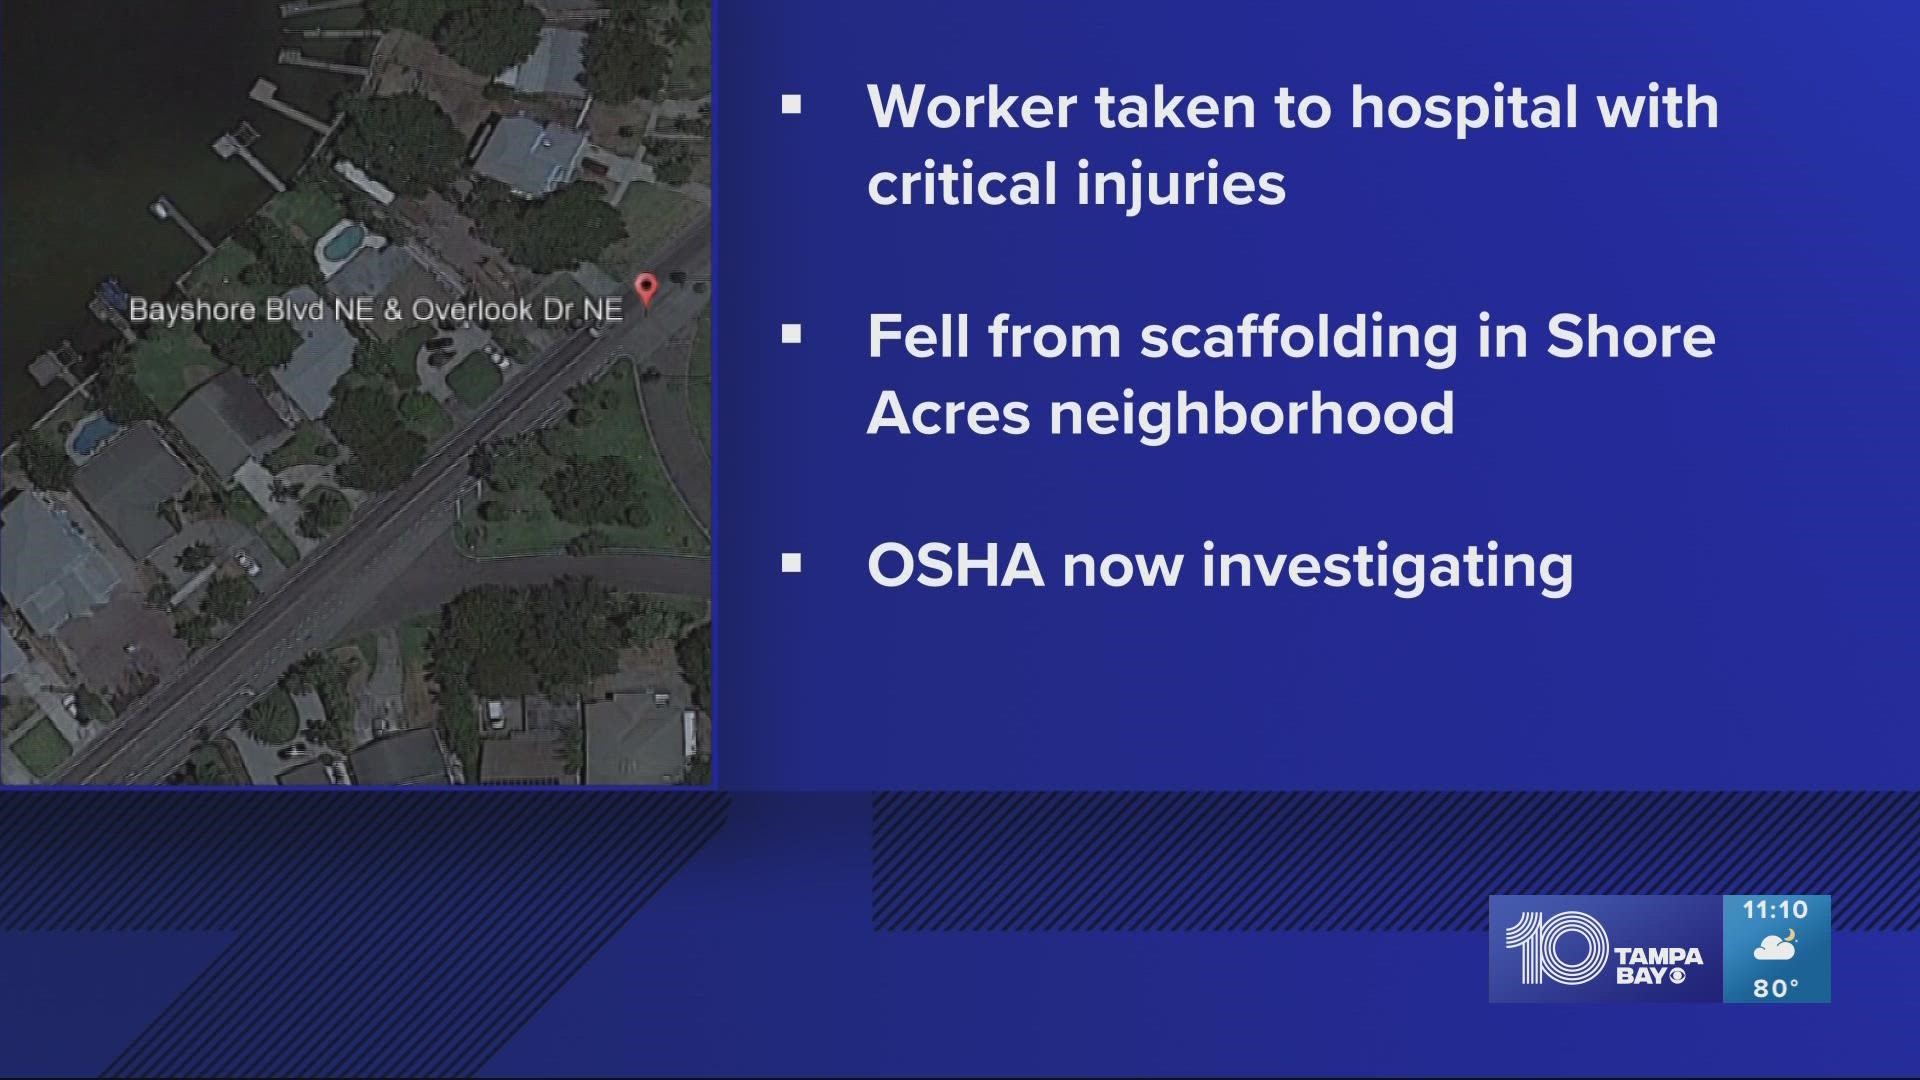 OSHA will investigate the incident, fire rescue said.